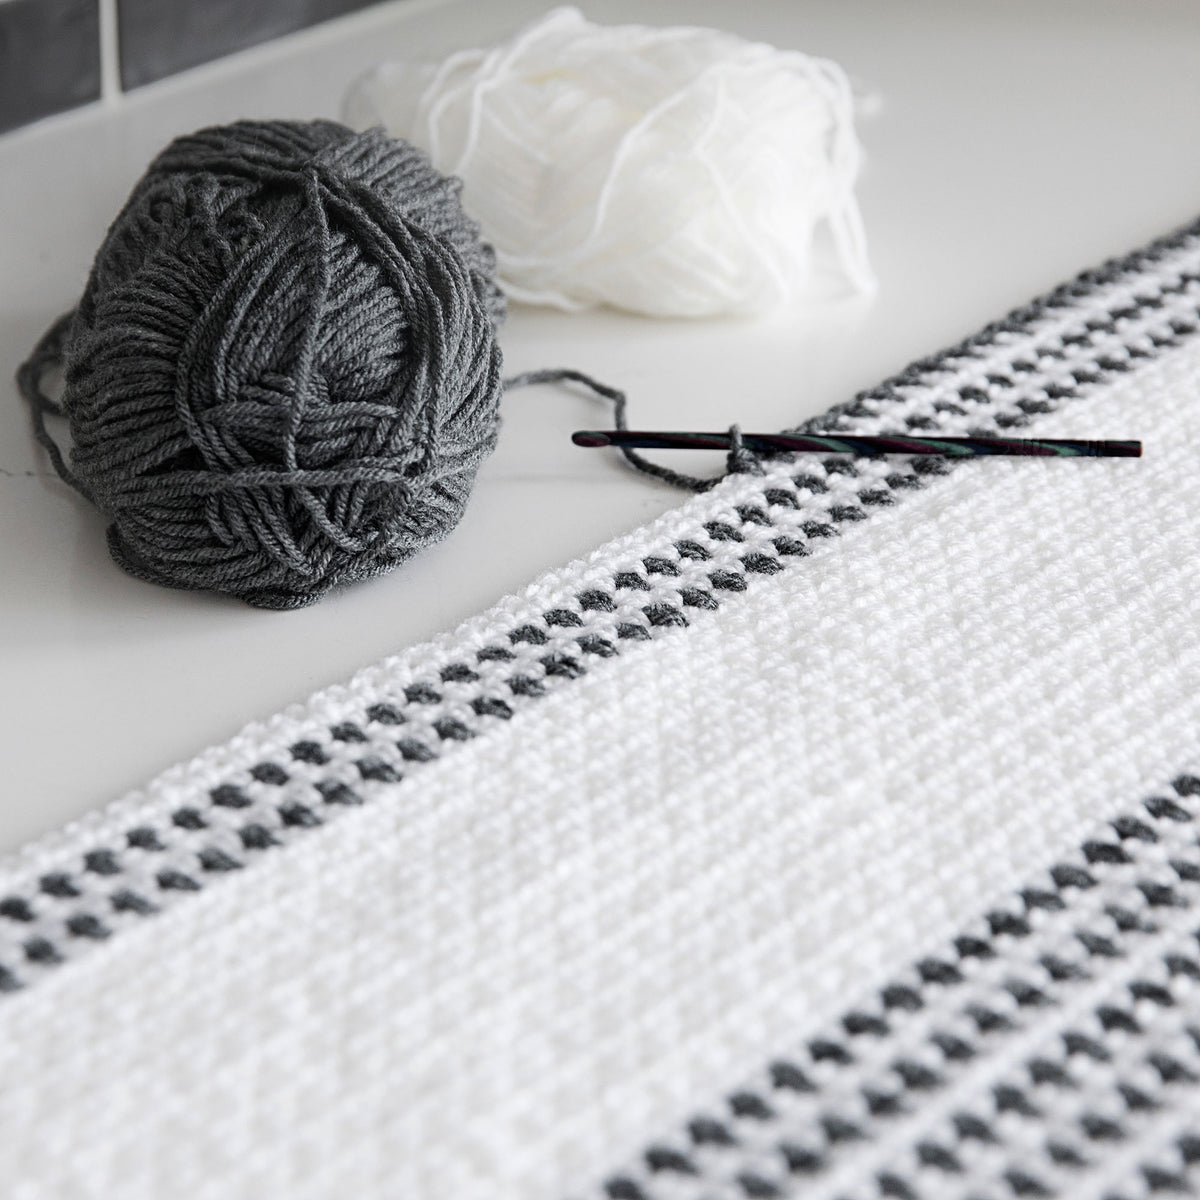 http://leelee-knits.myshopify.com/cdn/shop/products/Woven-Stitch-Crochet-Throw-02_1200x1200.jpg?v=1643385416